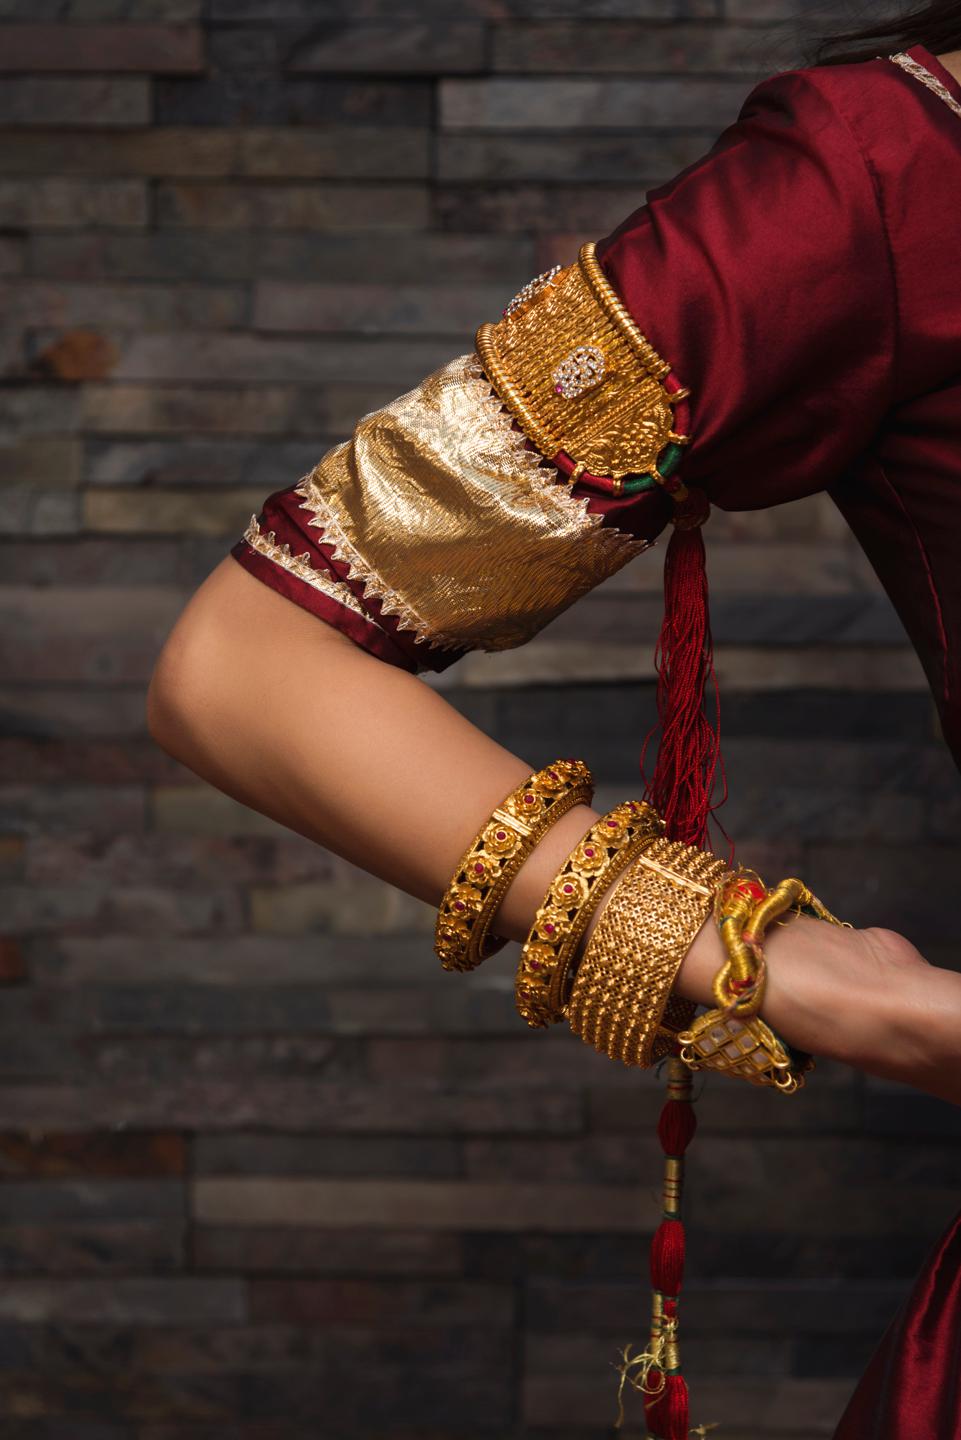 maroon-taffeta-lehenga-11423138MR, Women Indian Ethnic Clothing, Silk Lehenga Choli